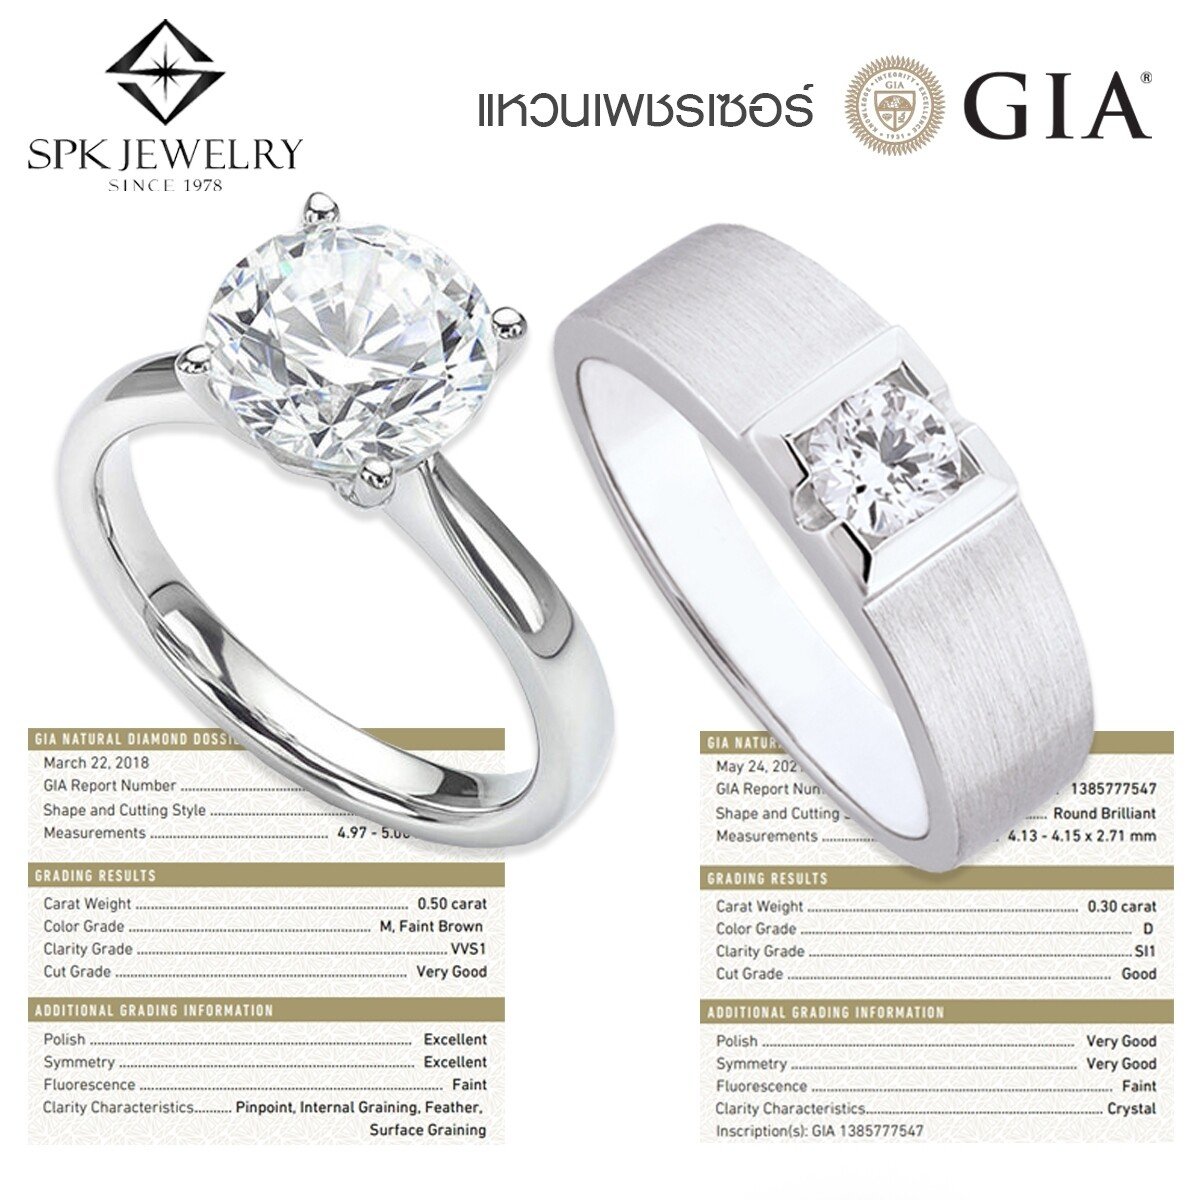 ชื่อสินค้า:  แหวนเพชรคู่แต่งงาน หญิง 1/0.50 น้ำ 95  ชาย 1/0.30 น้ำ  100 ทอง  18k  GIA เบลเยี่ยม
ราคาสินค้า:  ฿250,000
ส่วนลดสินค้า:  ฿99,900
s.lazada.co.th/s.RpRGR